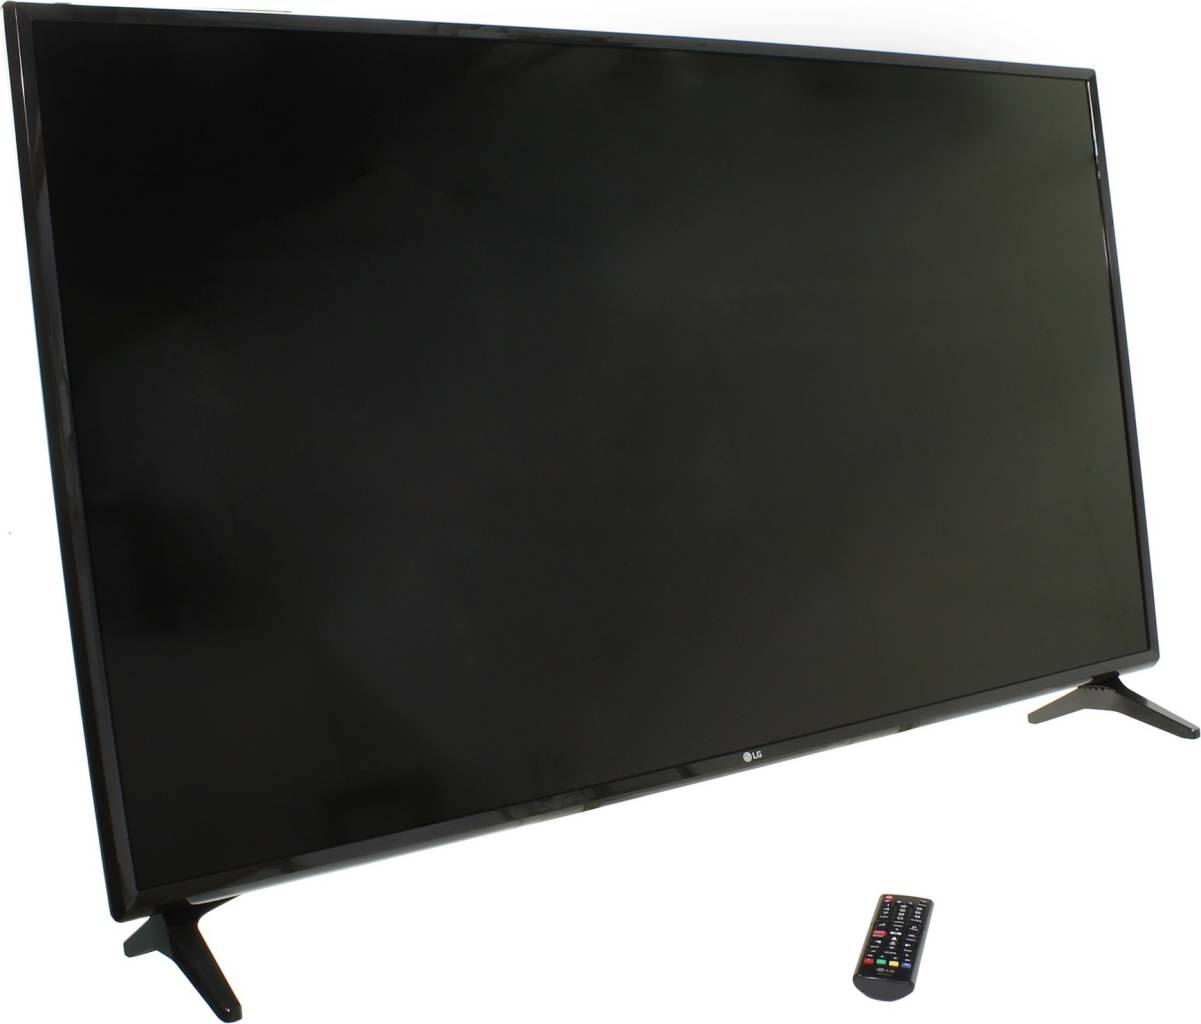  49 LED TV LG 49LK5910PLC (1920x1080, HDMI, LAN, WiFi , USB, DVB-T2, SmartTV)